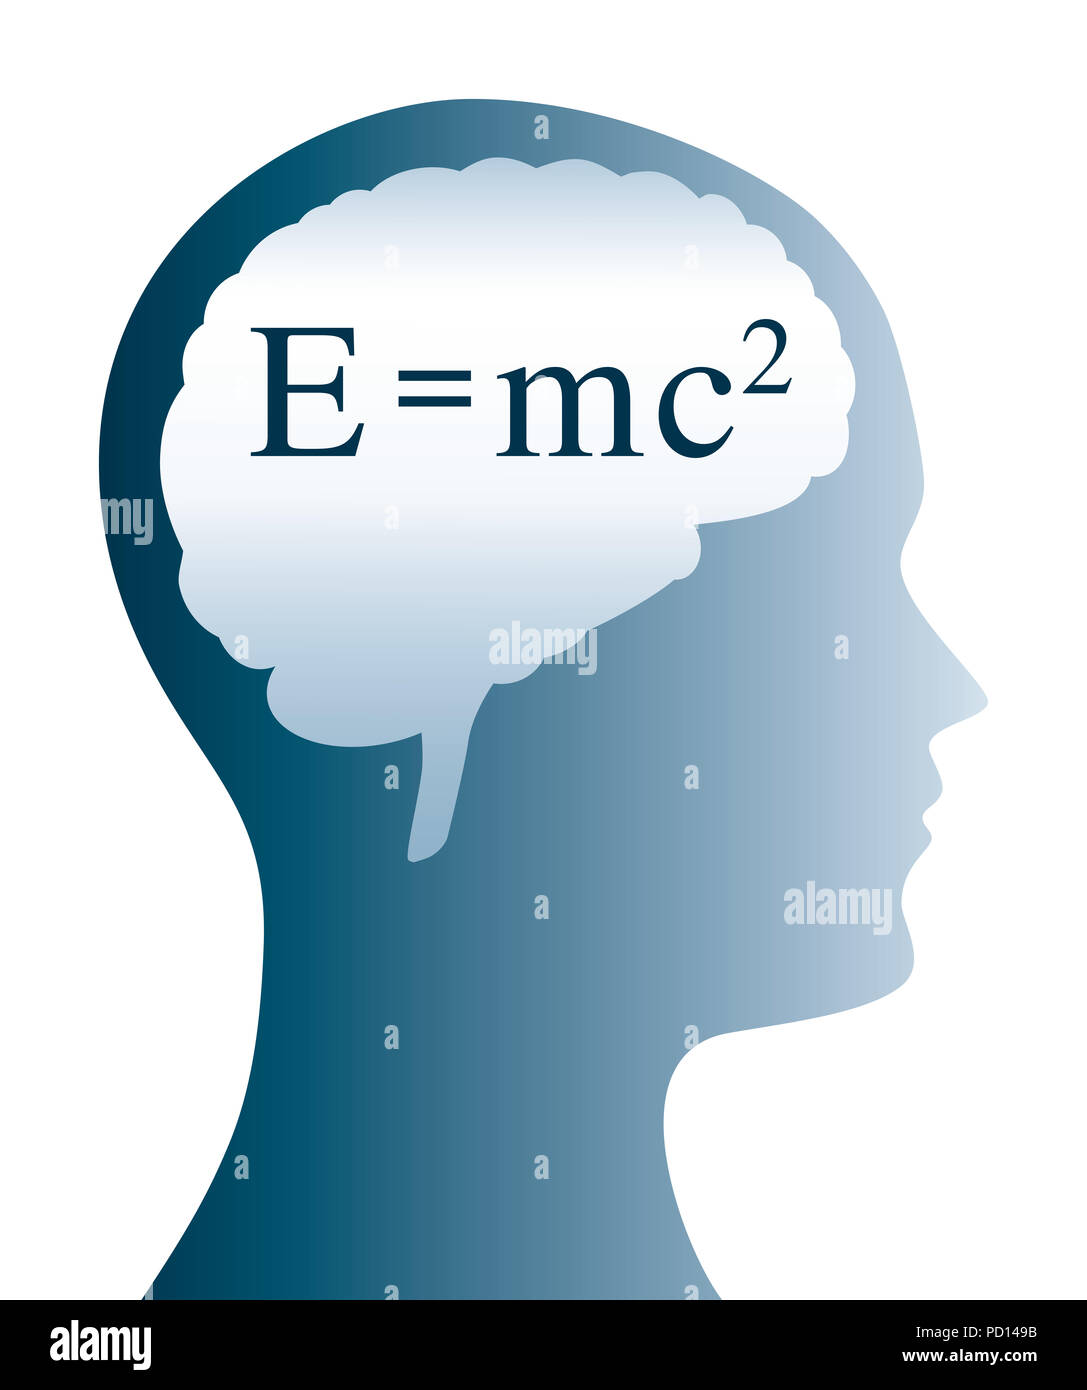 Formule d'Einstein dans le cerveau forme et coupe d'un chef. E =mc2 en physique est la formule de l'équivalence masse-énergie. Banque D'Images